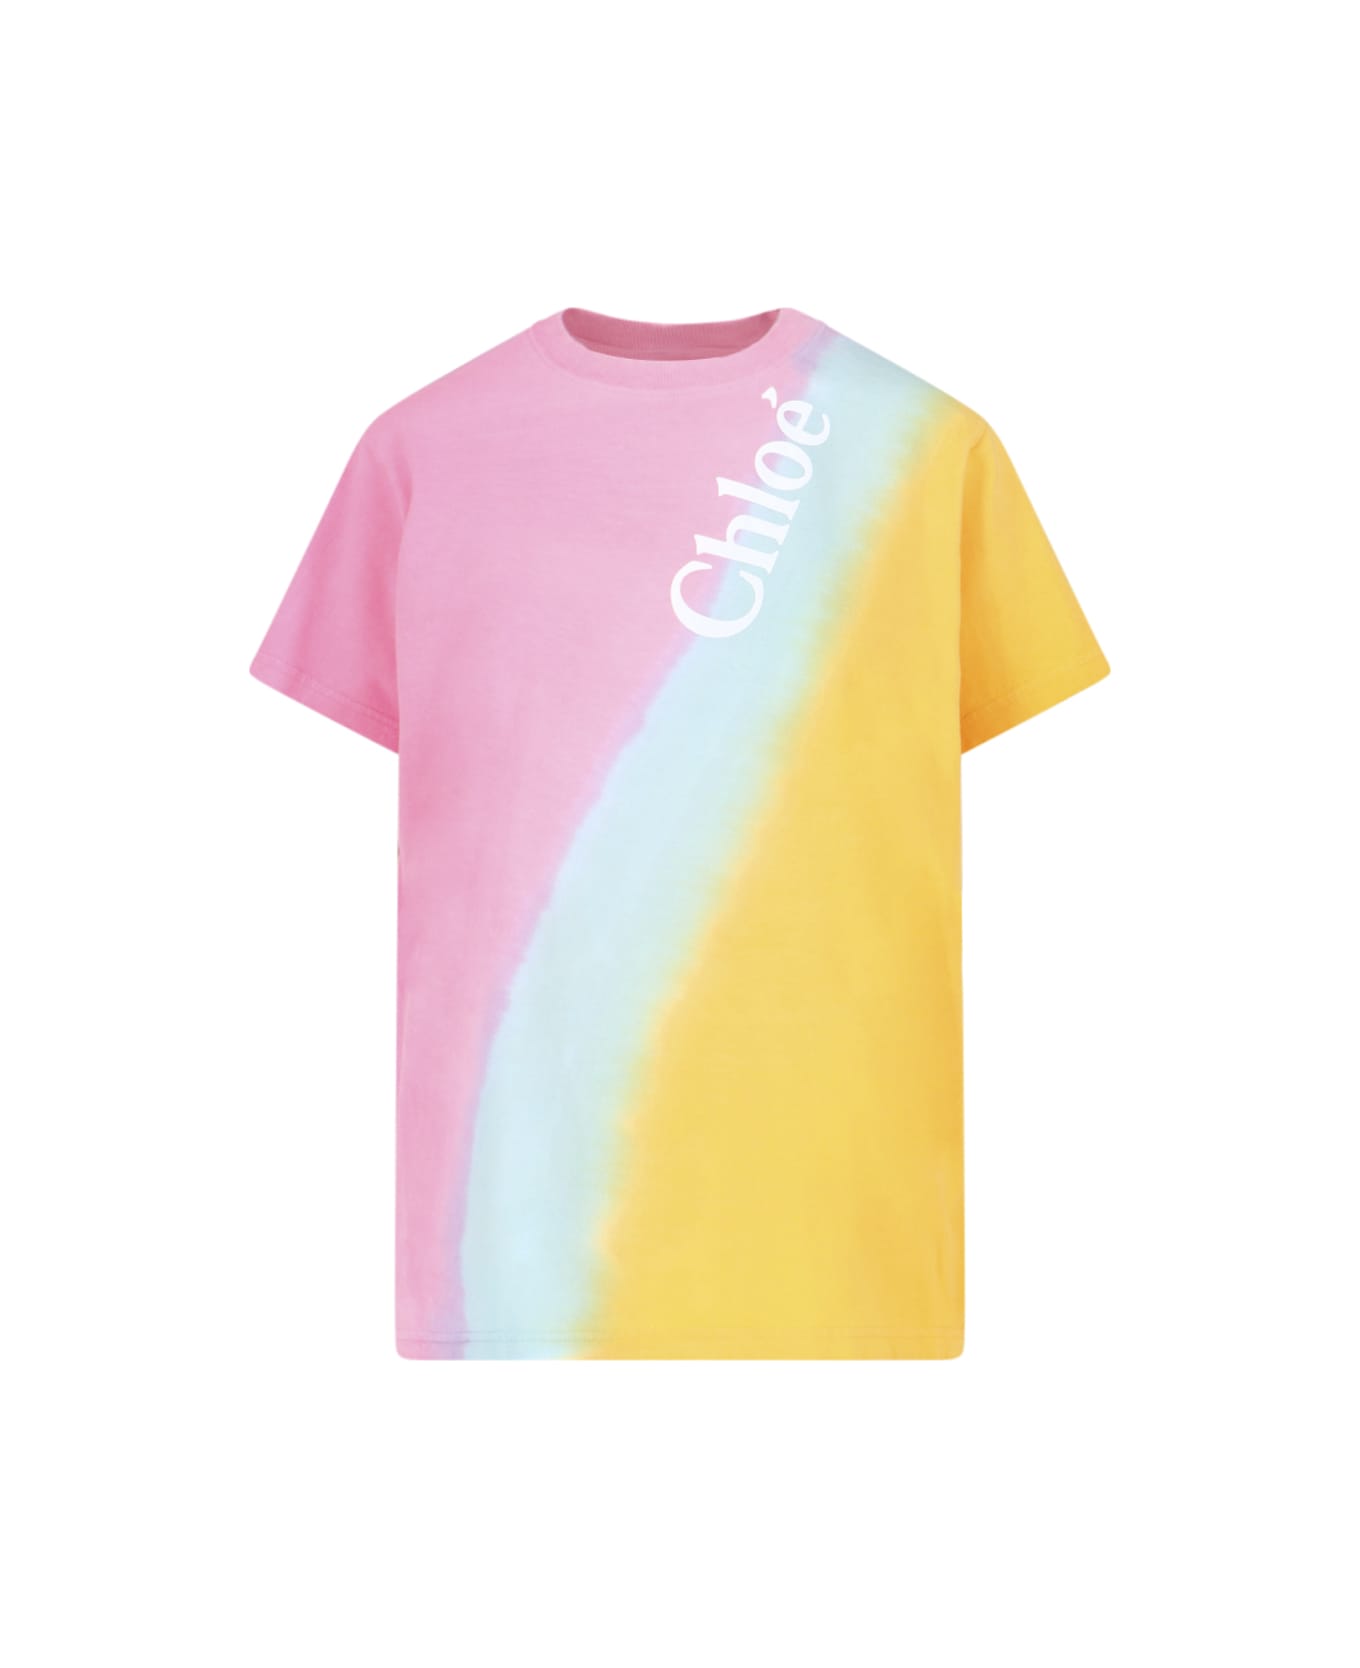 Chloé "tie-dye" Effect T-shirt - Multicolor